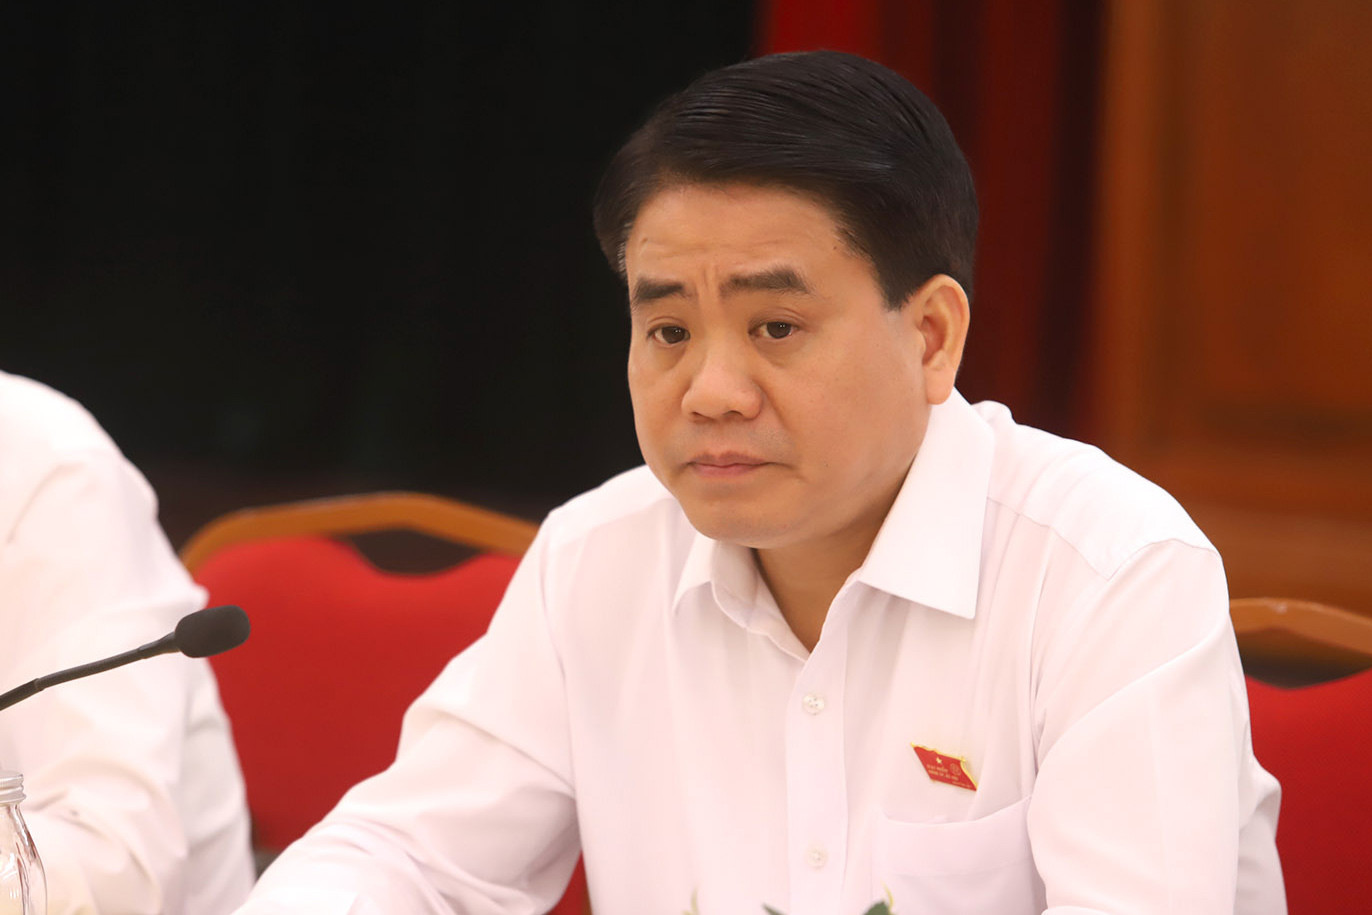 Cựu Chủ tịch Hà Nội Nguyễn Đức Chung hầu tòa, vợ cũng bị triệu tập